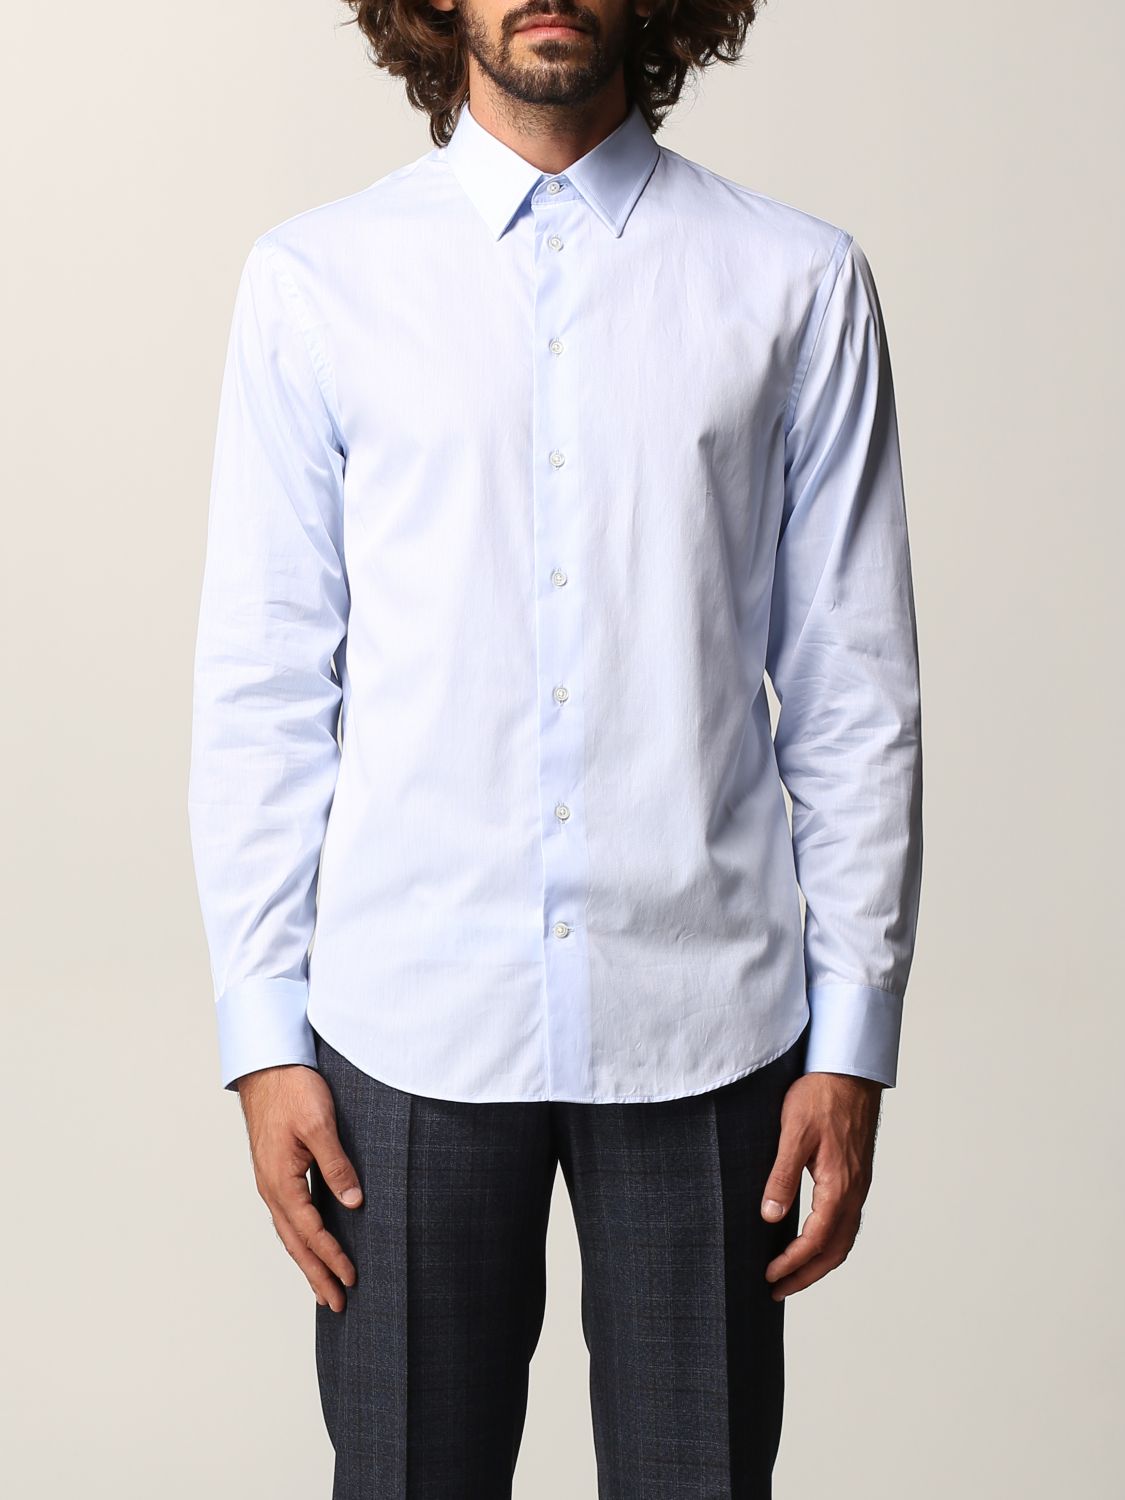 EMPORIO ARMANI: cotton shirt - Gnawed Blue 1 | Emporio Armani shirt ...